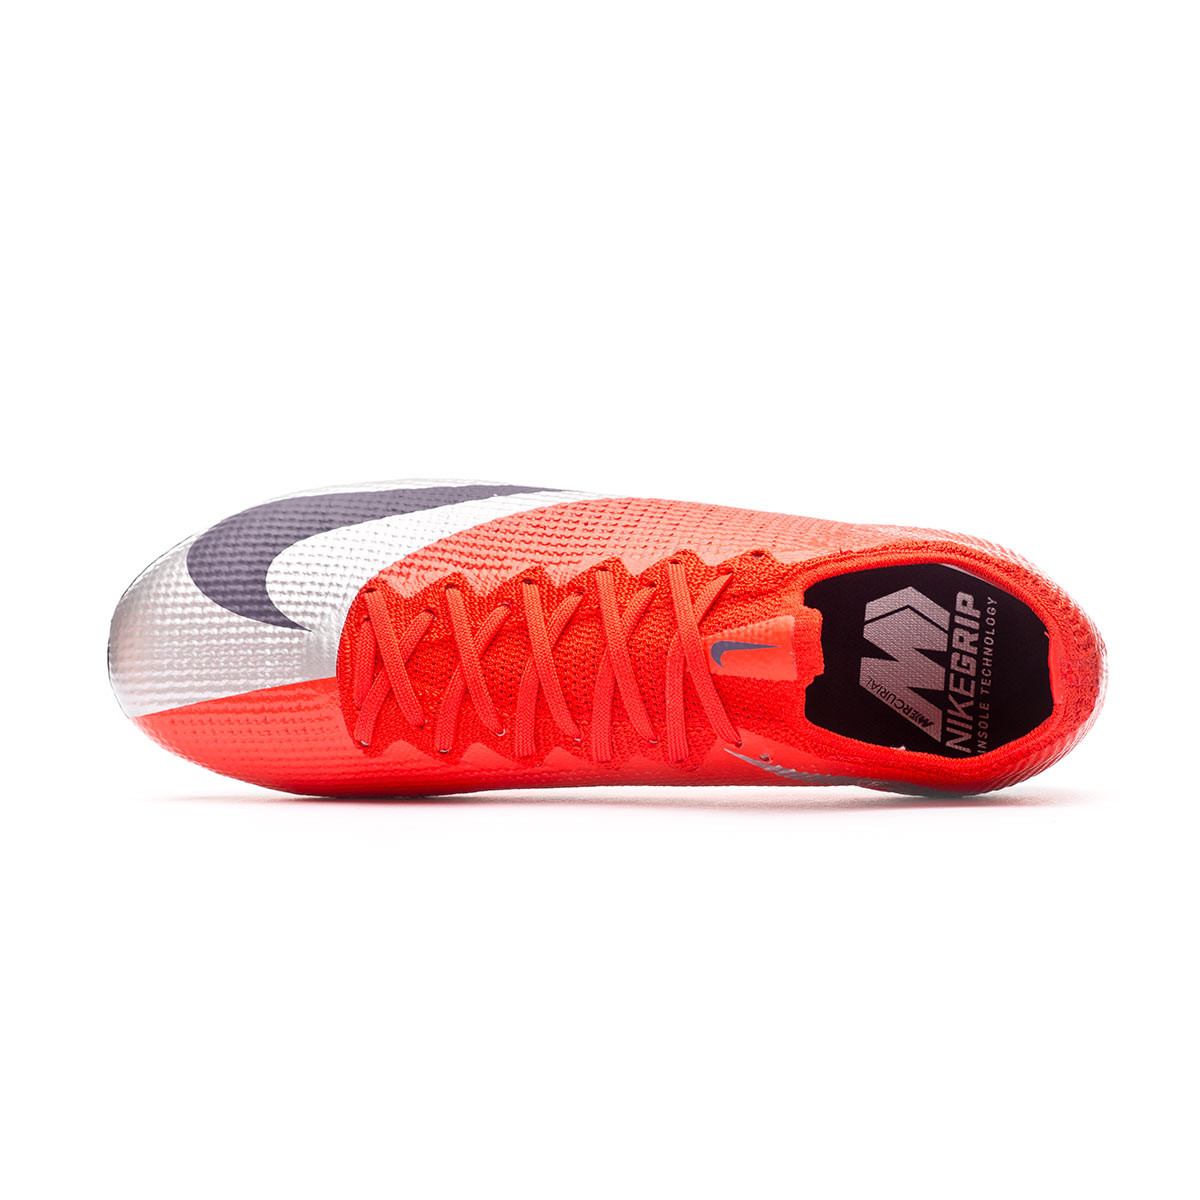 Nike Mercurial Superfly 6 Elite FG Black Total Orange.